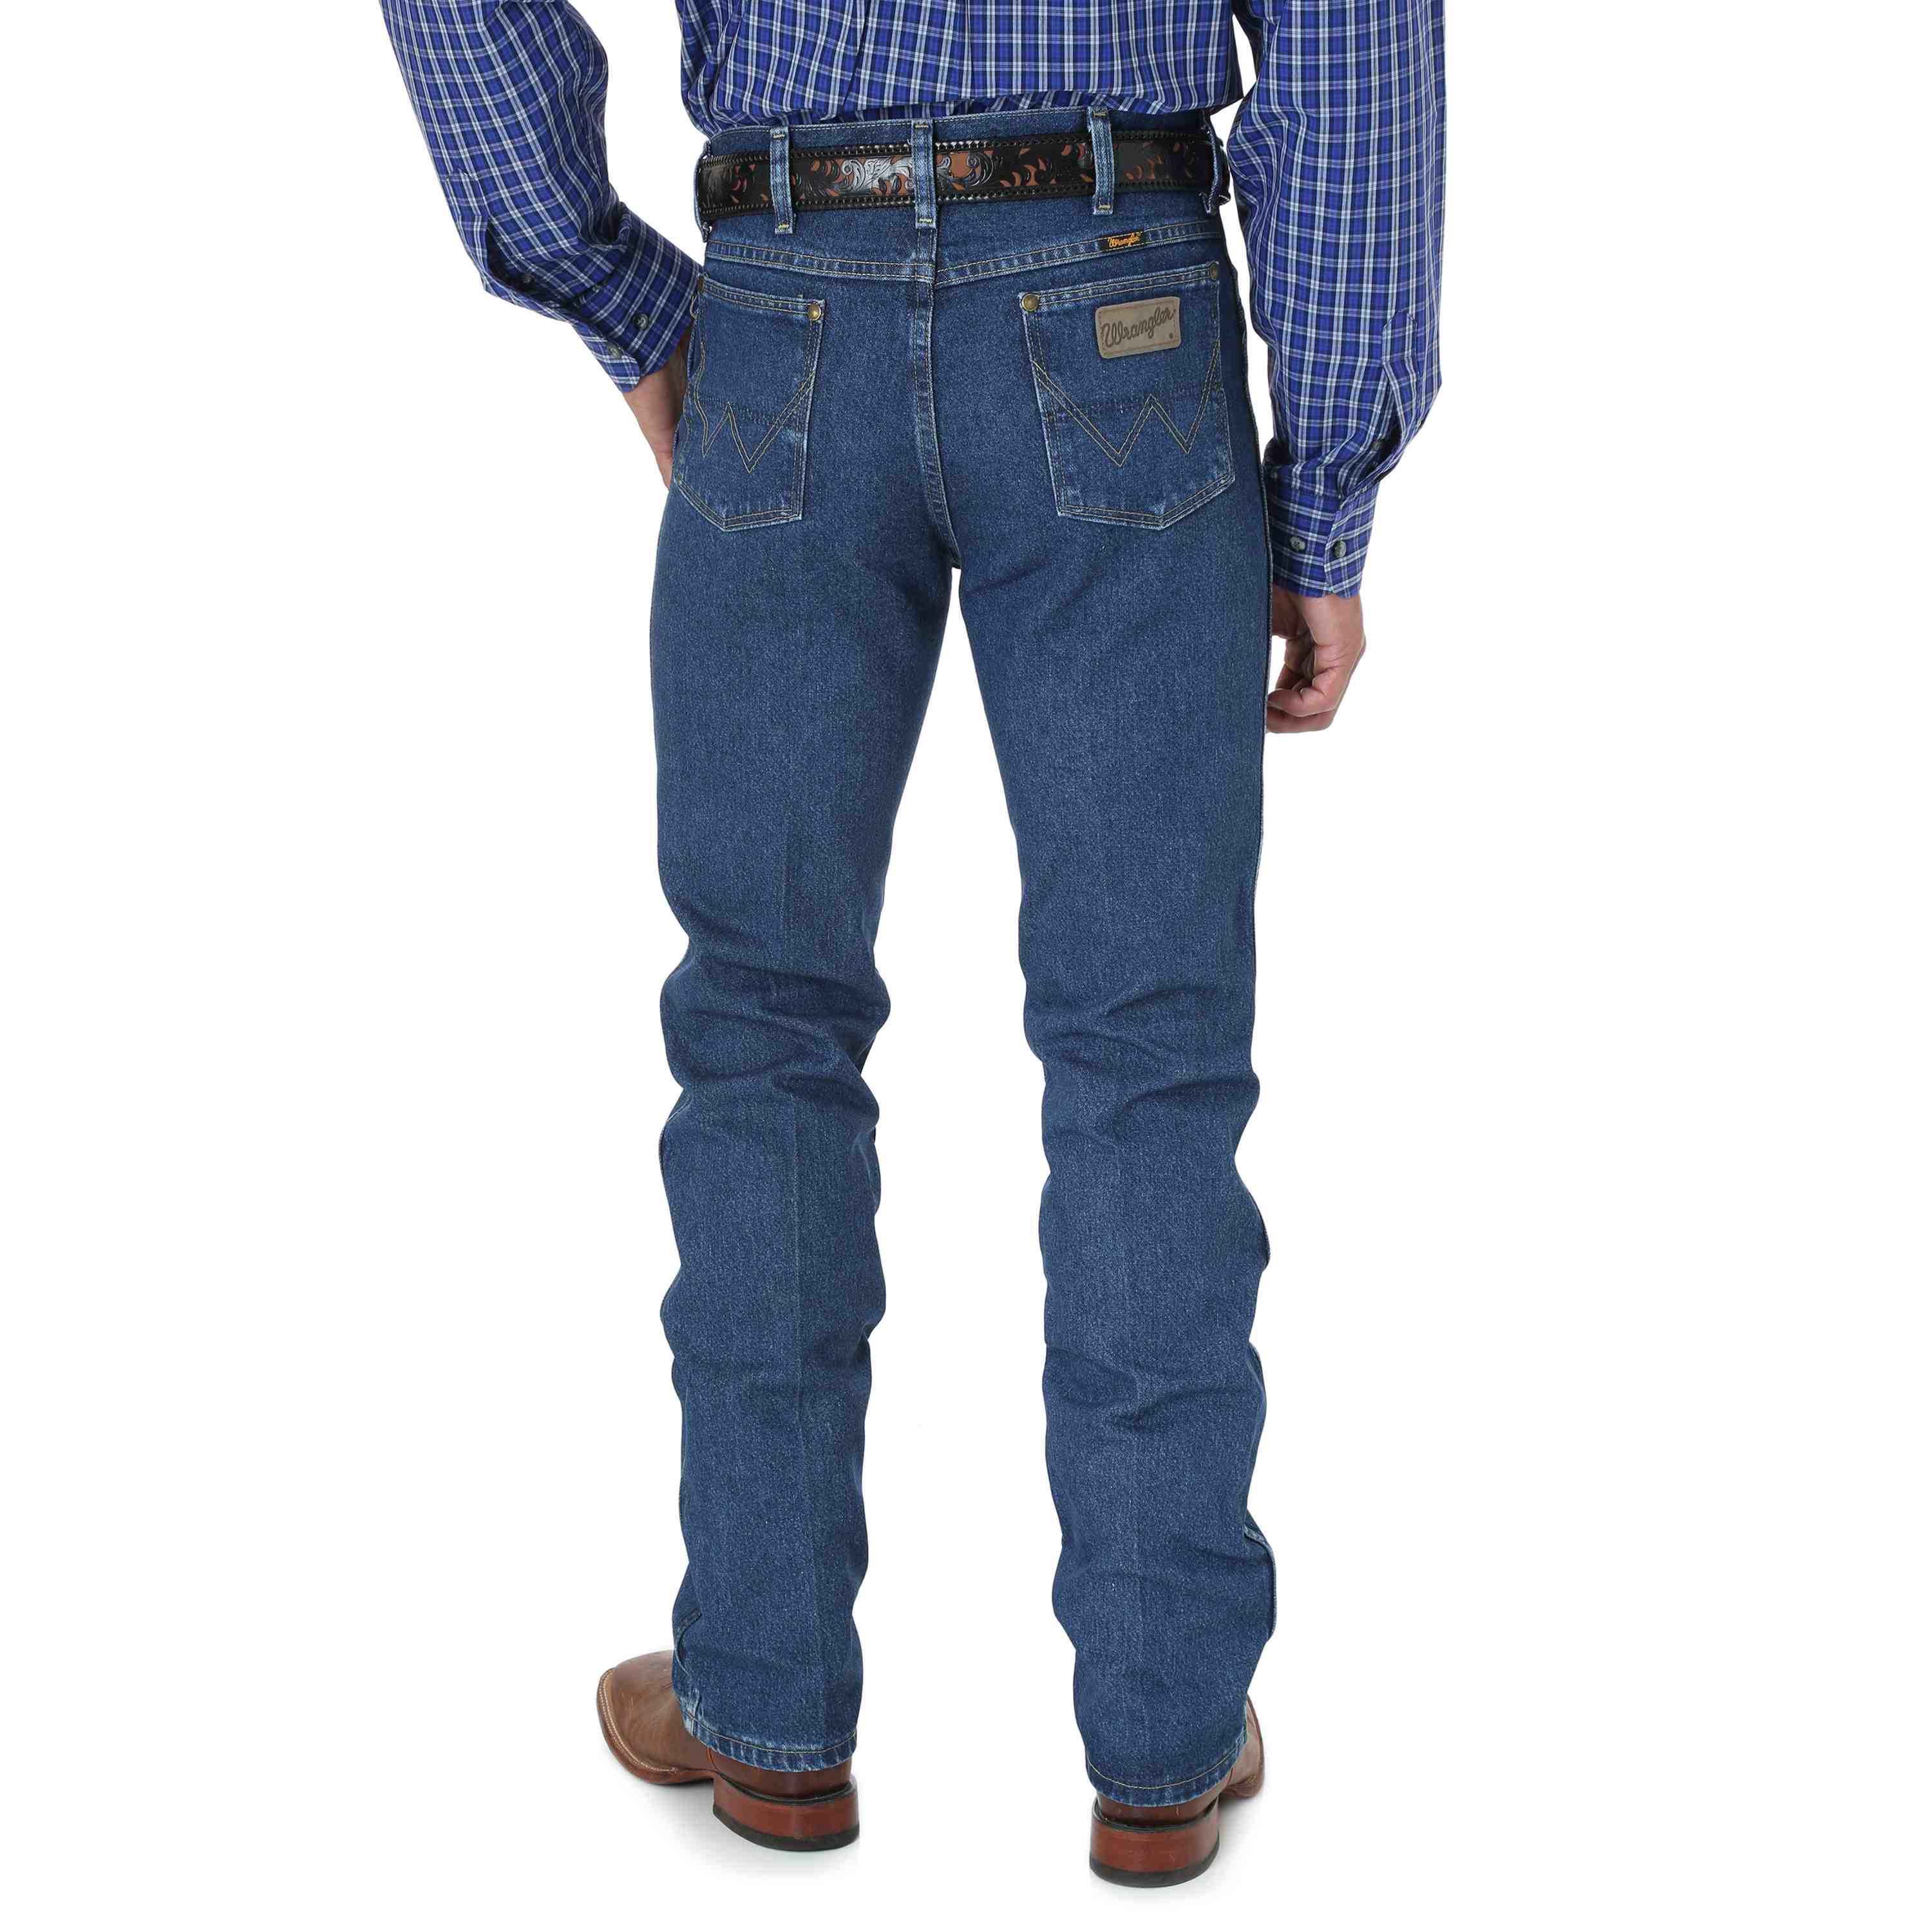 Wrangler George Strait Cowboy Cut Slim Fit Men's Jeans 936GSHD - Russell's  Western Wear, Inc.